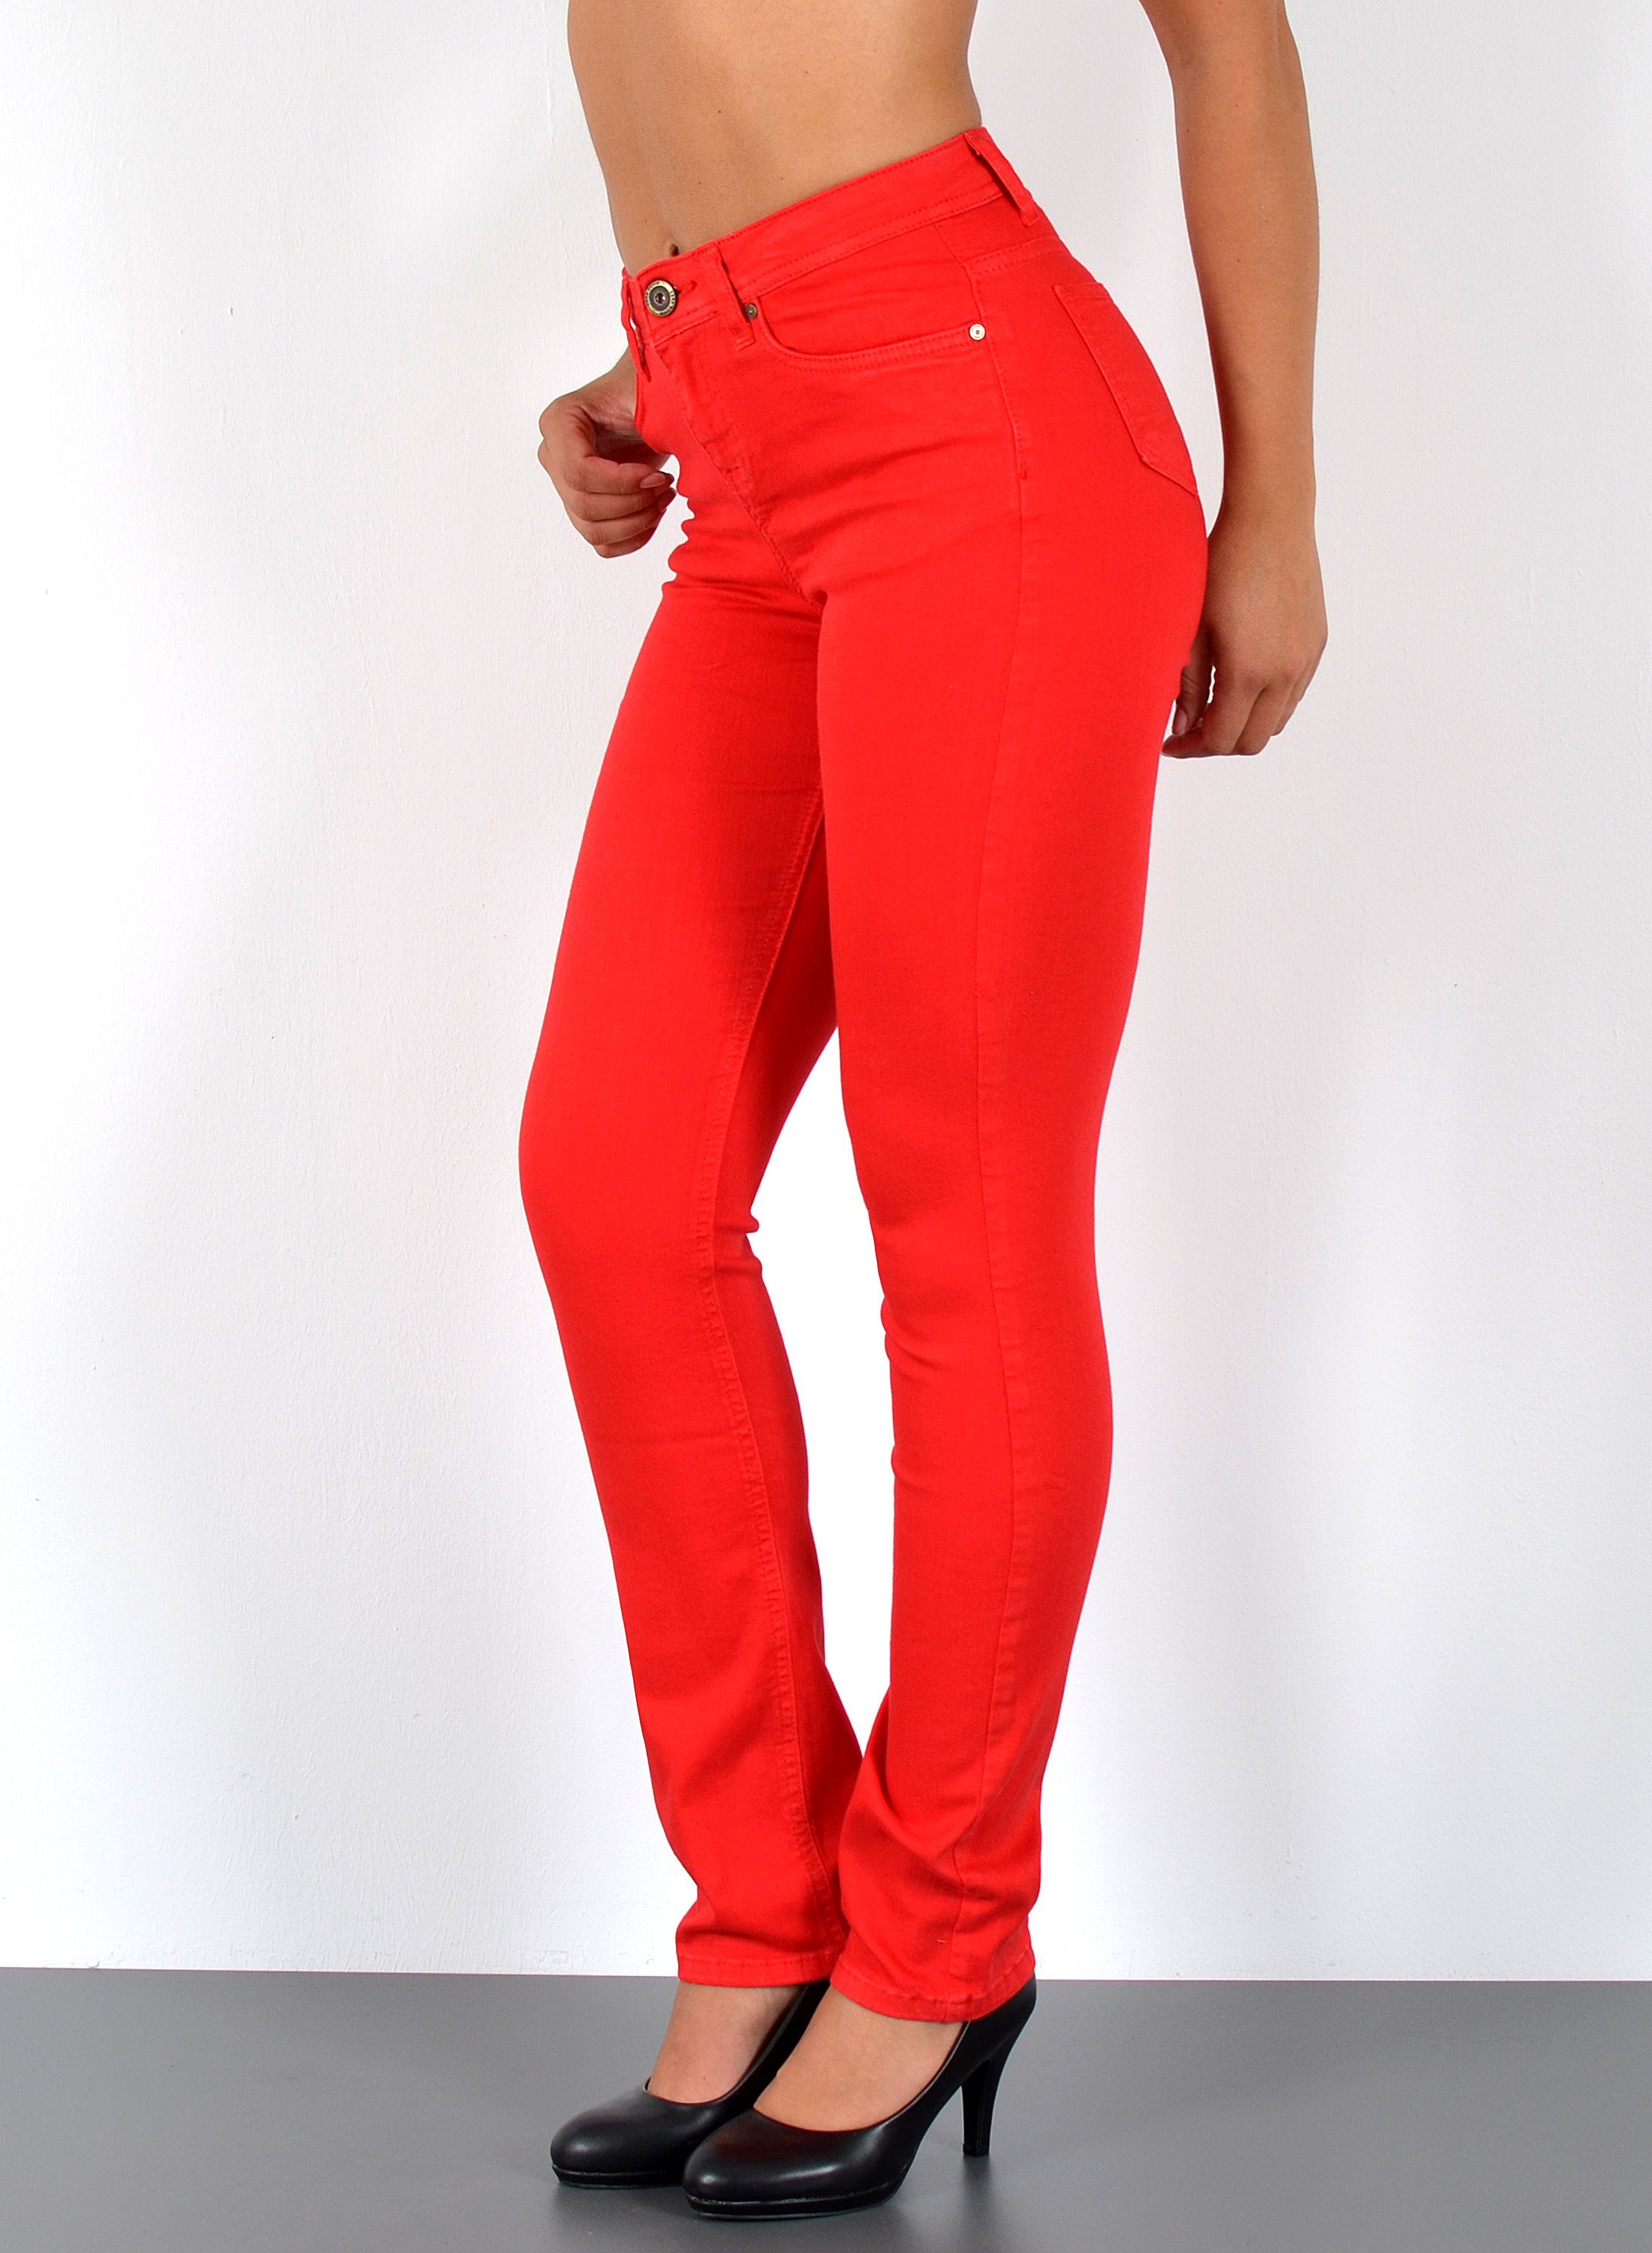 Rote Jeans online kaufen | OTTO